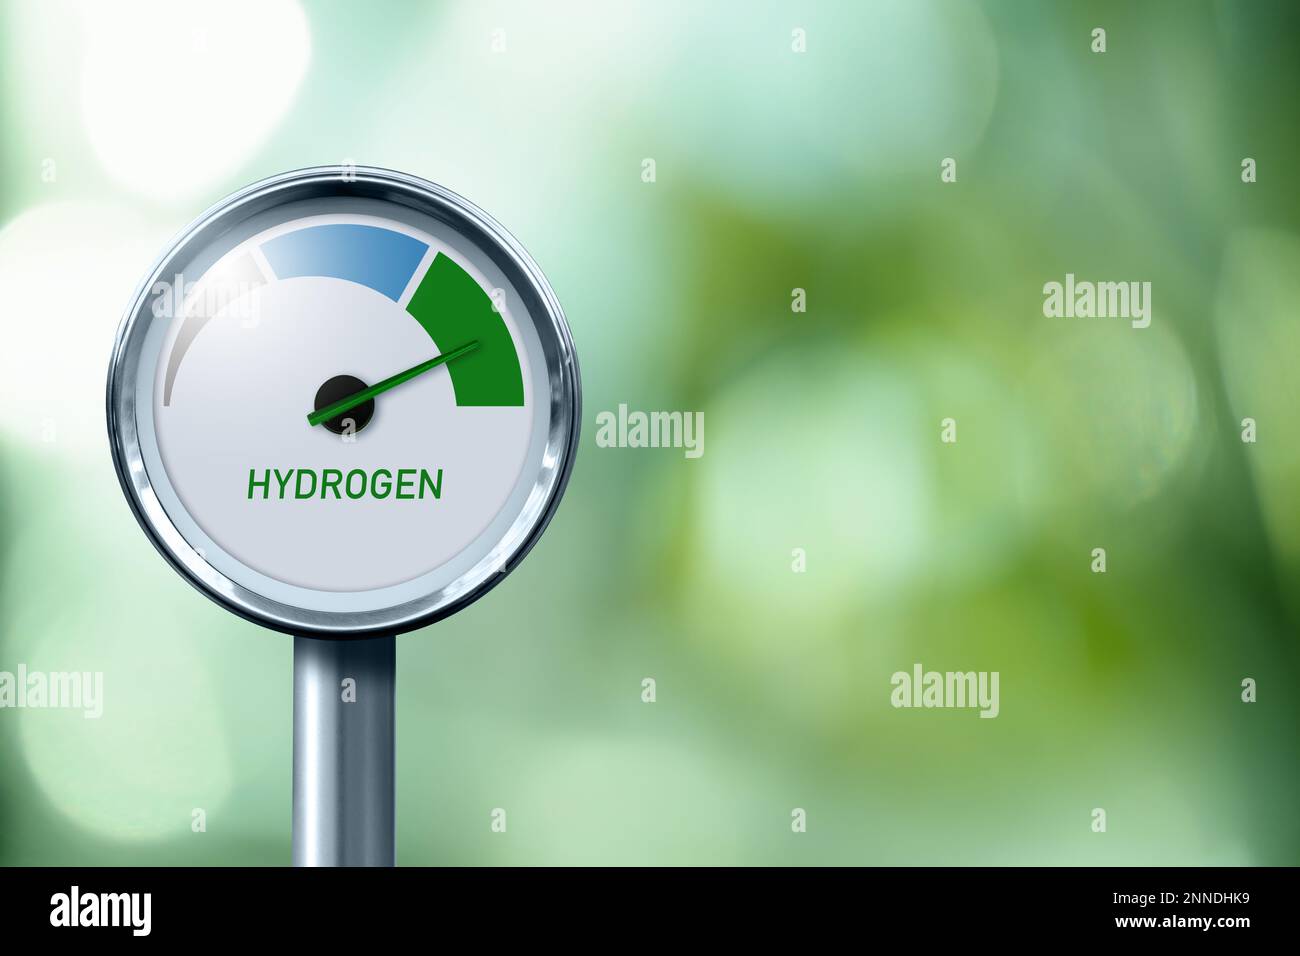 Indicatore di idrogeno con colori ad albero: Grigio, blu e verde. Concetto di produzione di idrogeno verde Foto Stock